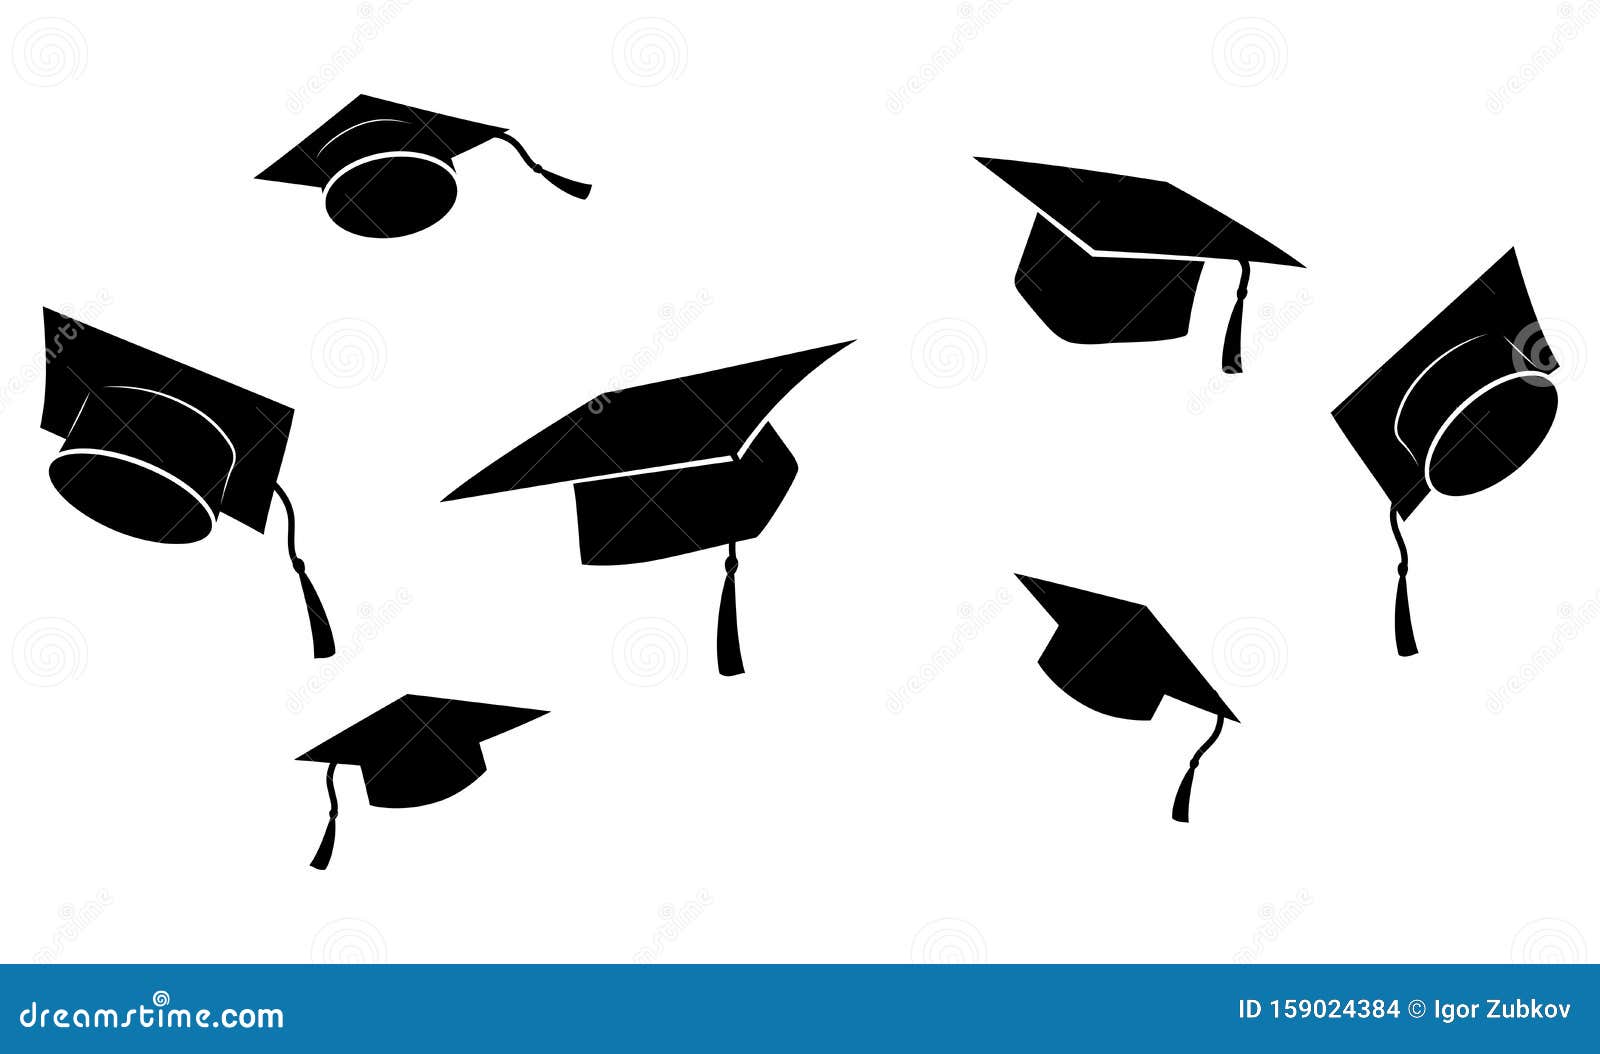 Graduation Caps Stock Illustrations – 1,709 Graduation Caps Stock  Illustrations, Vectors & Clipart - Dreamstime